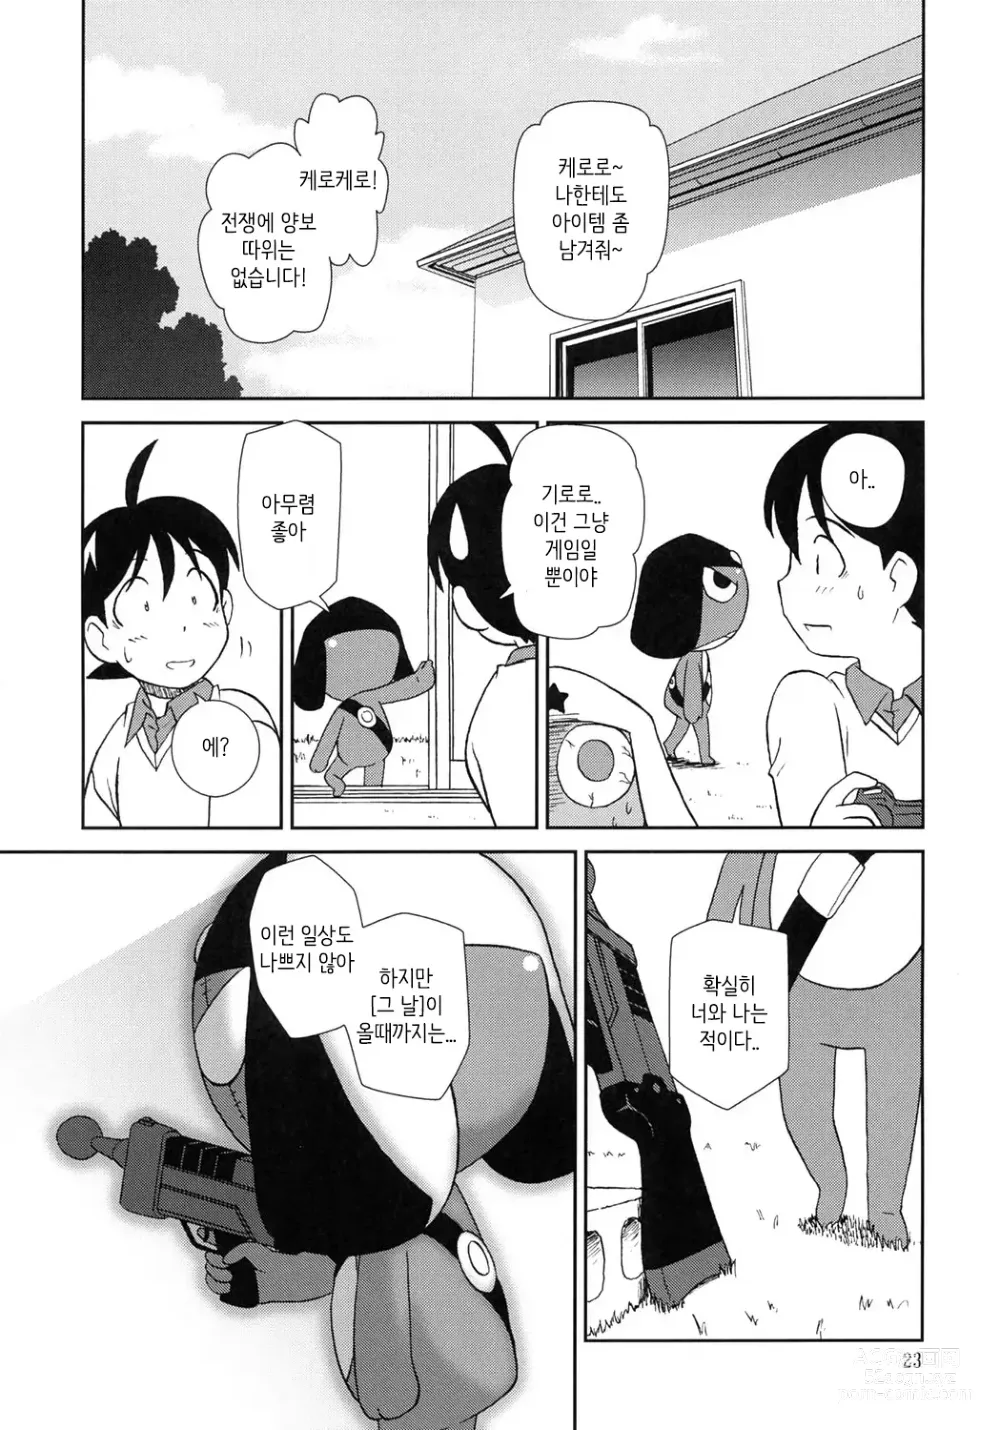 Page 22 of doujinshi 마음이 문제